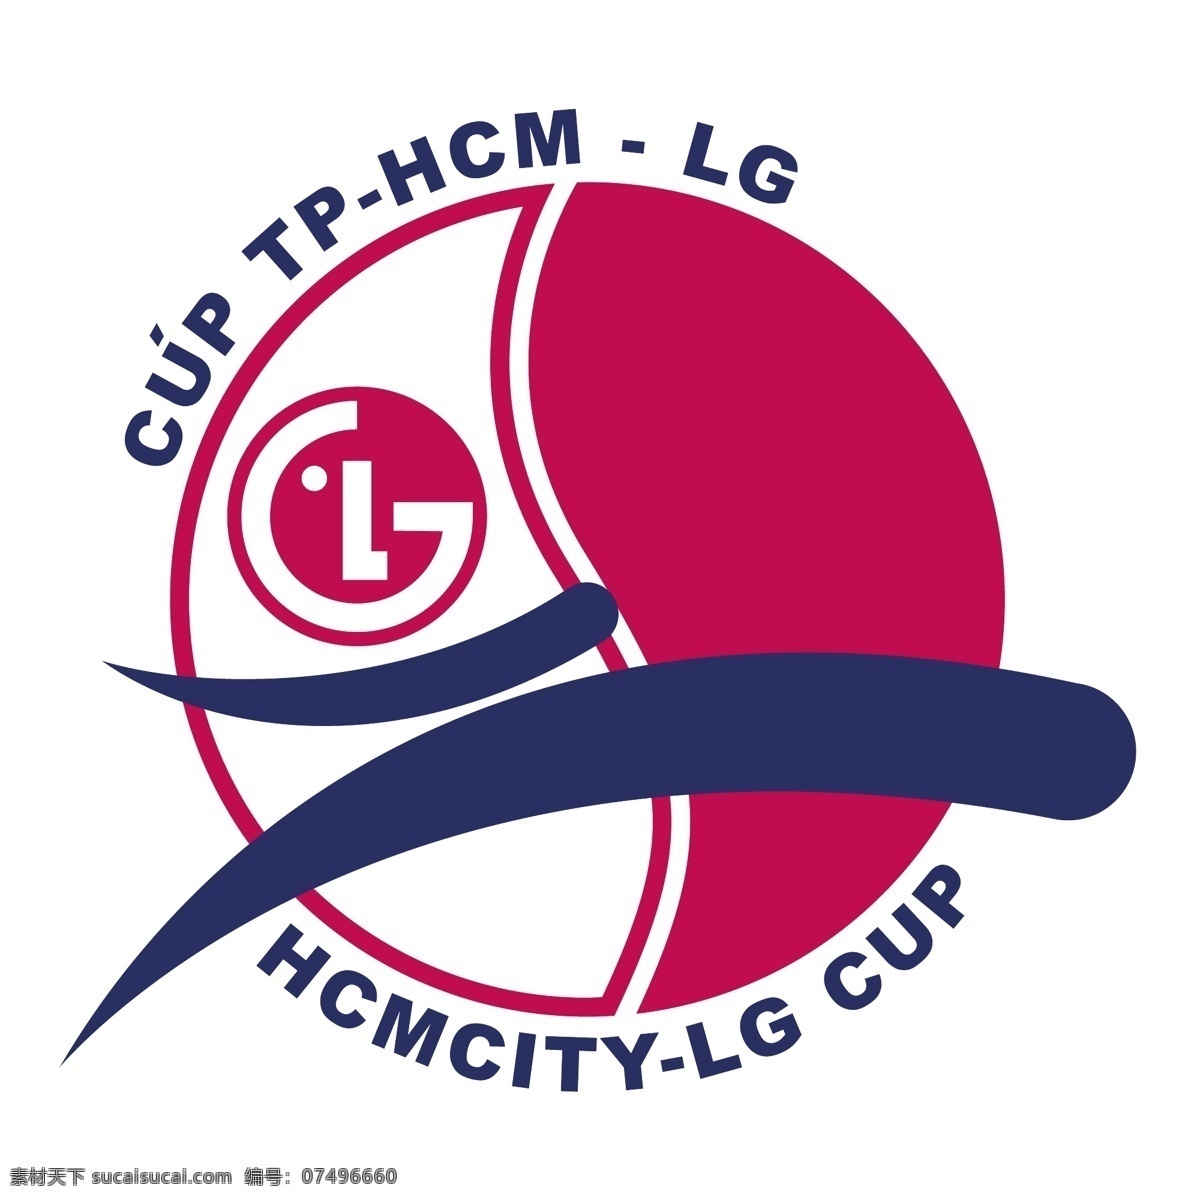 胡志明市 lg 杯 自由 越南 标志 免费 psd源文件 logo设计